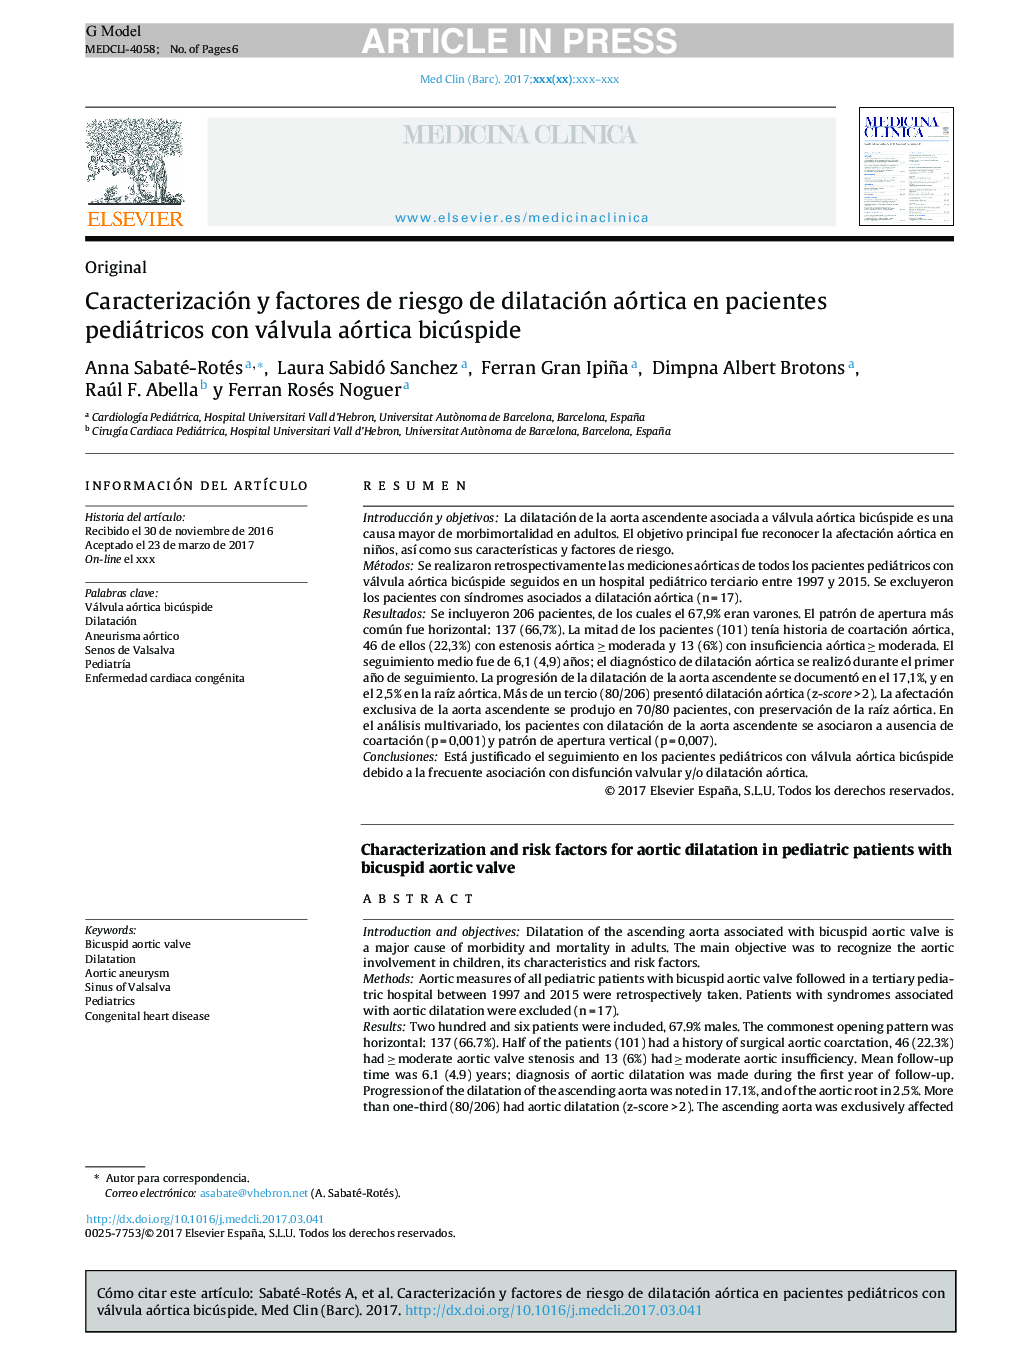 Caracterización y factores de riesgo de dilatación aórtica en pacientes pediátricos con válvula aórtica bicúspide